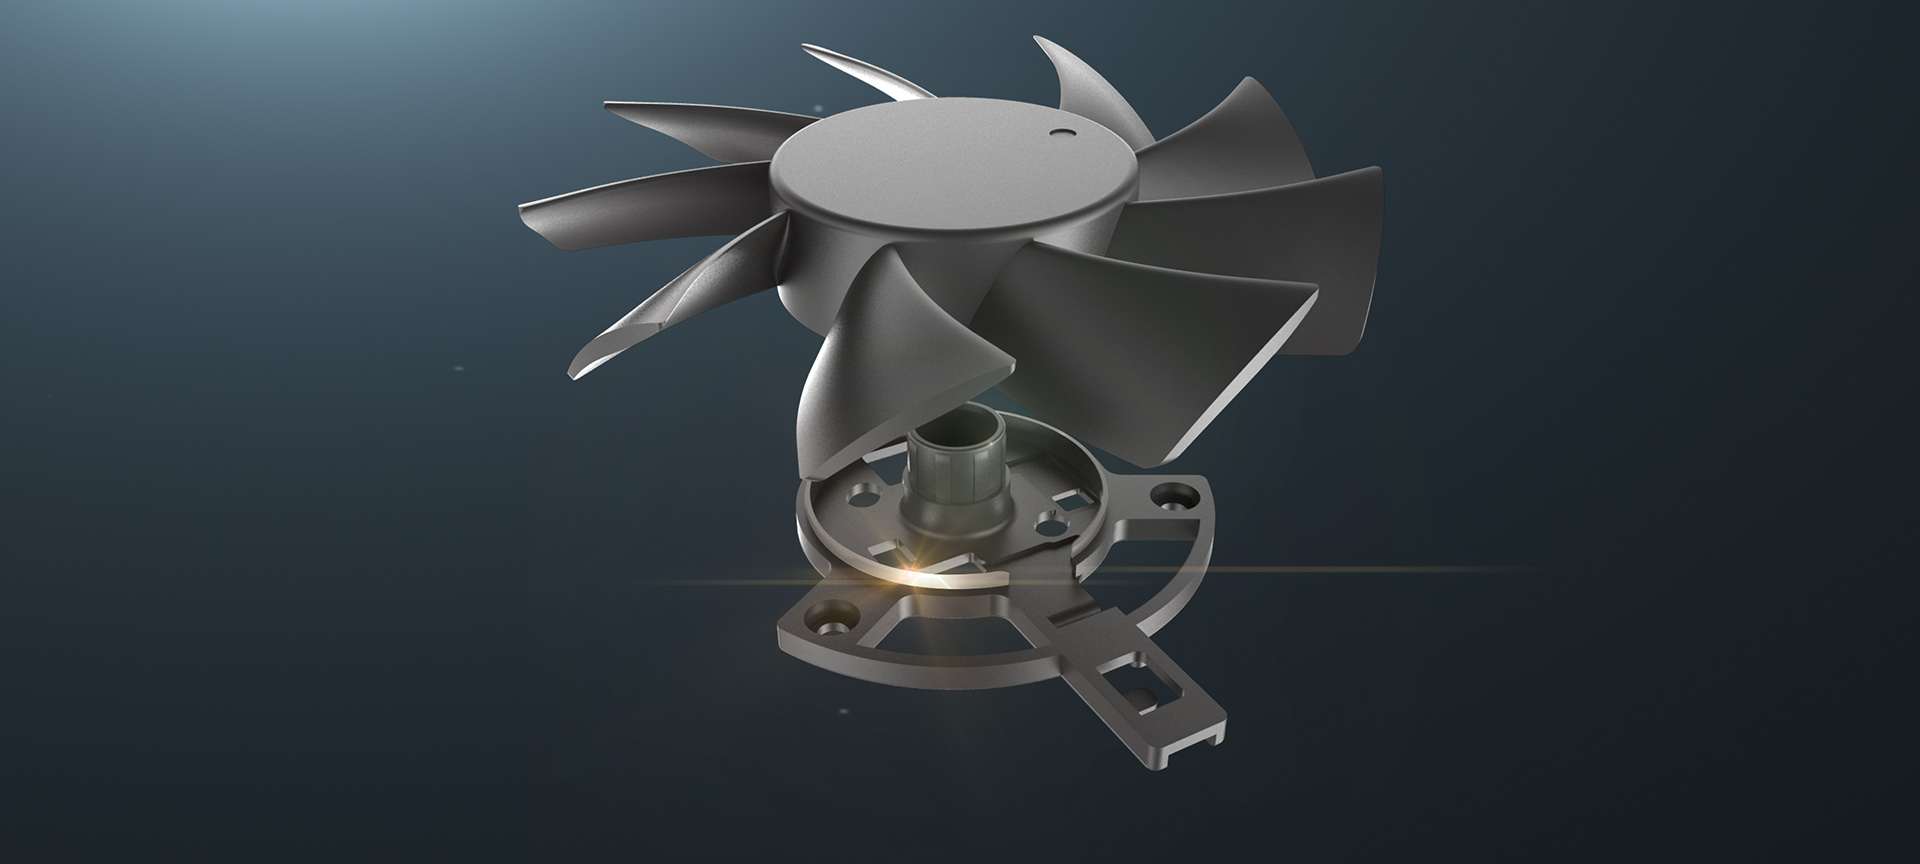 Dust-resistant fan design